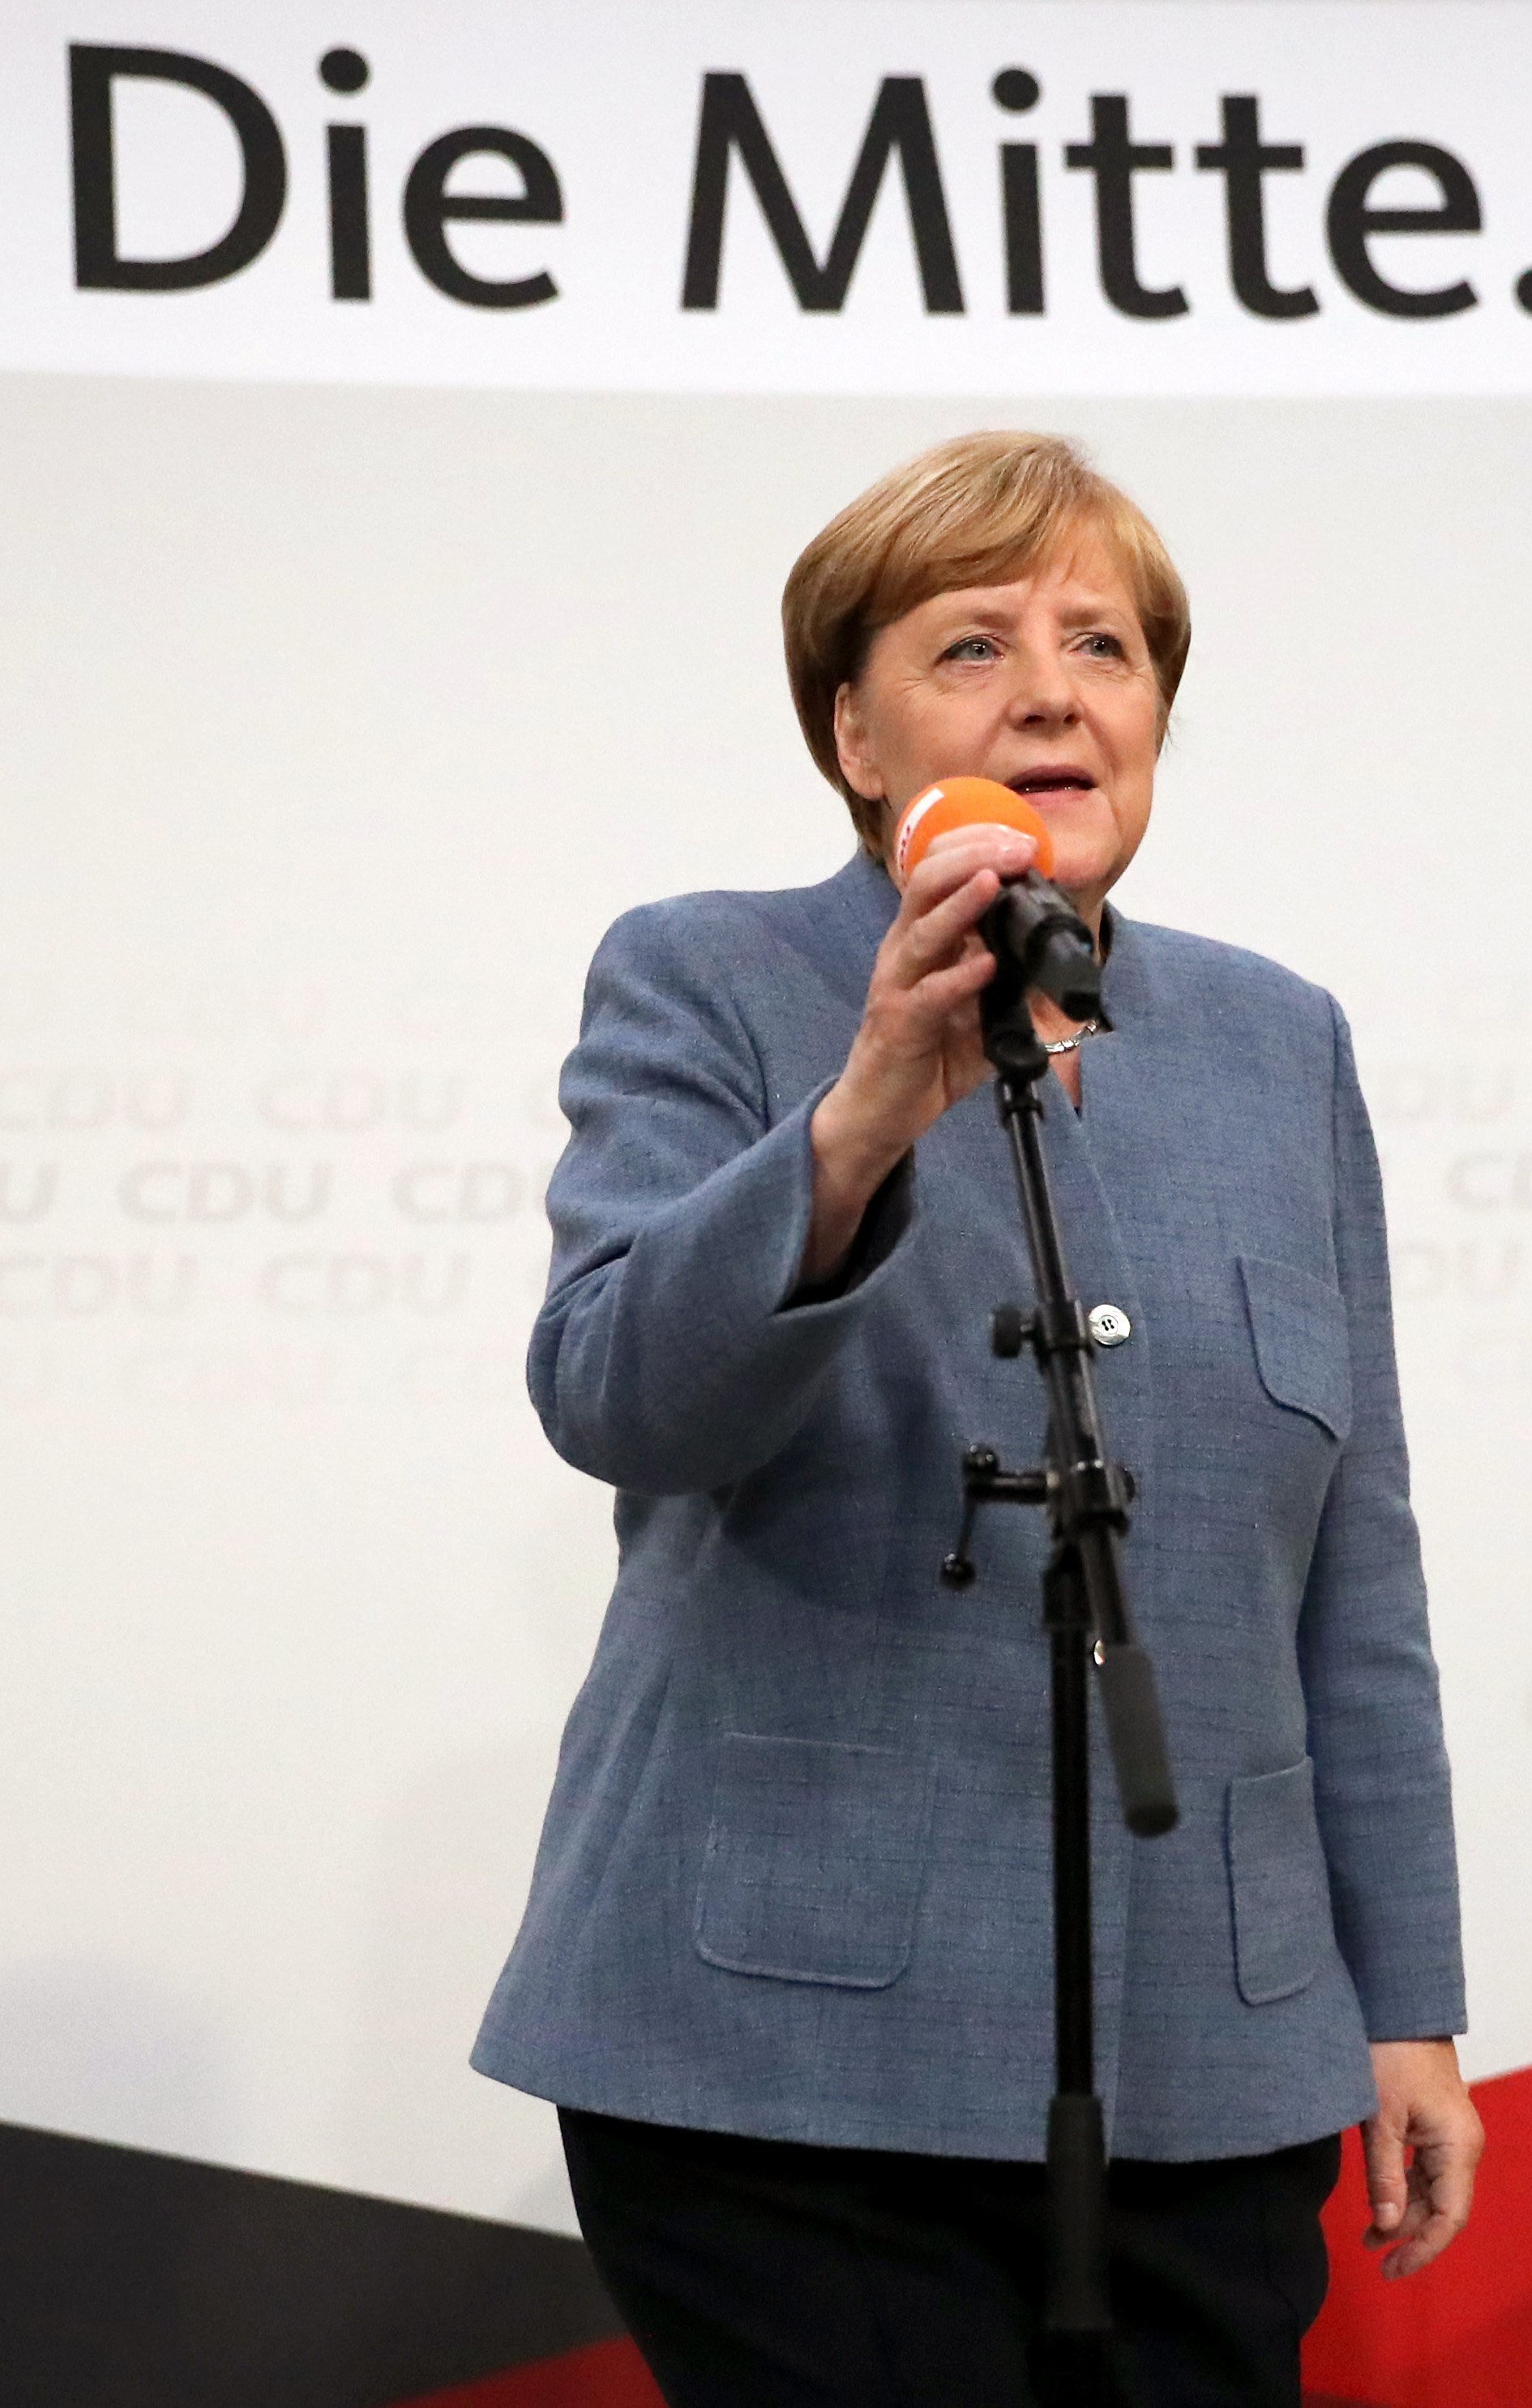 Merkel guanya i la ultradreta és la tercera força